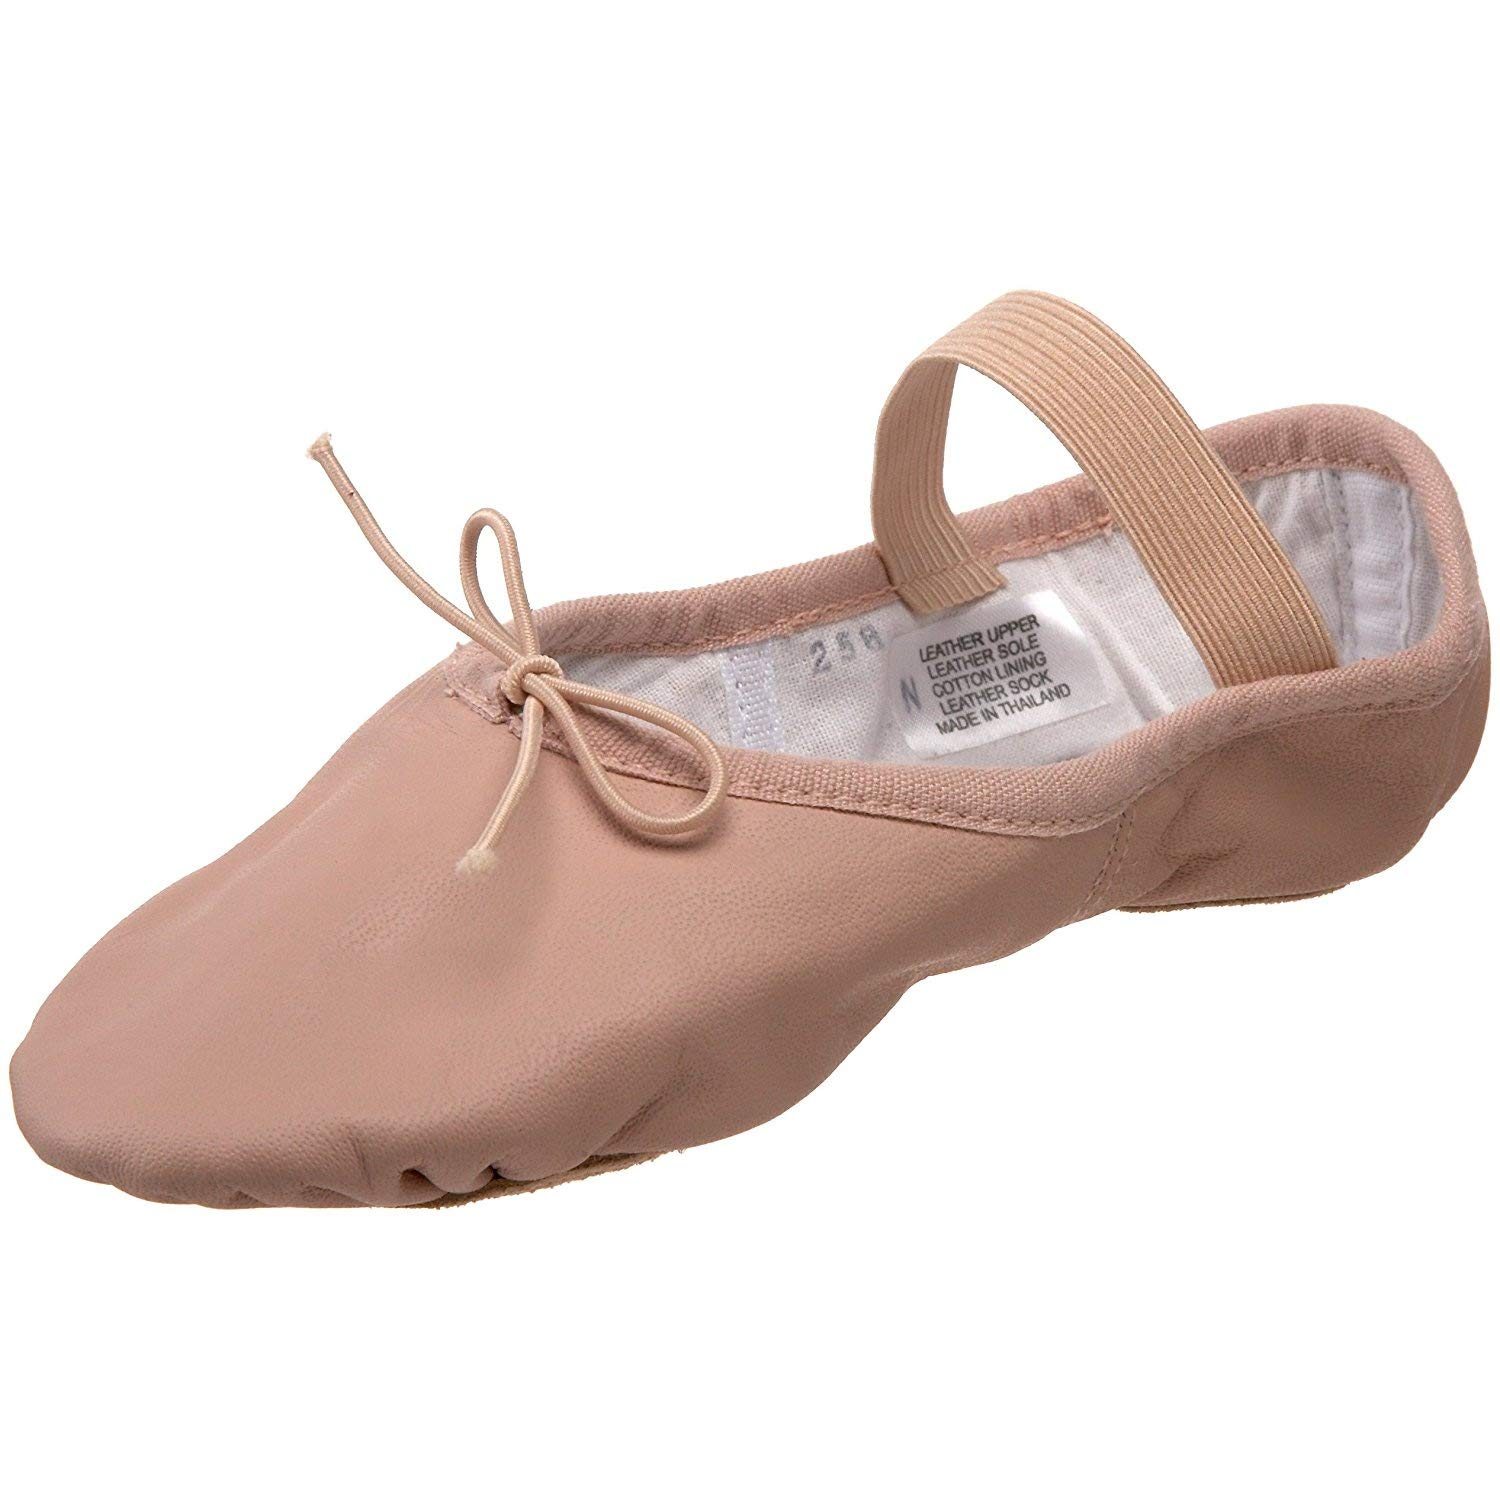 Bloch girls Bloch Dance Girl's Dansoft Ii Leather Split Sole Ballet Shoe/Slipper